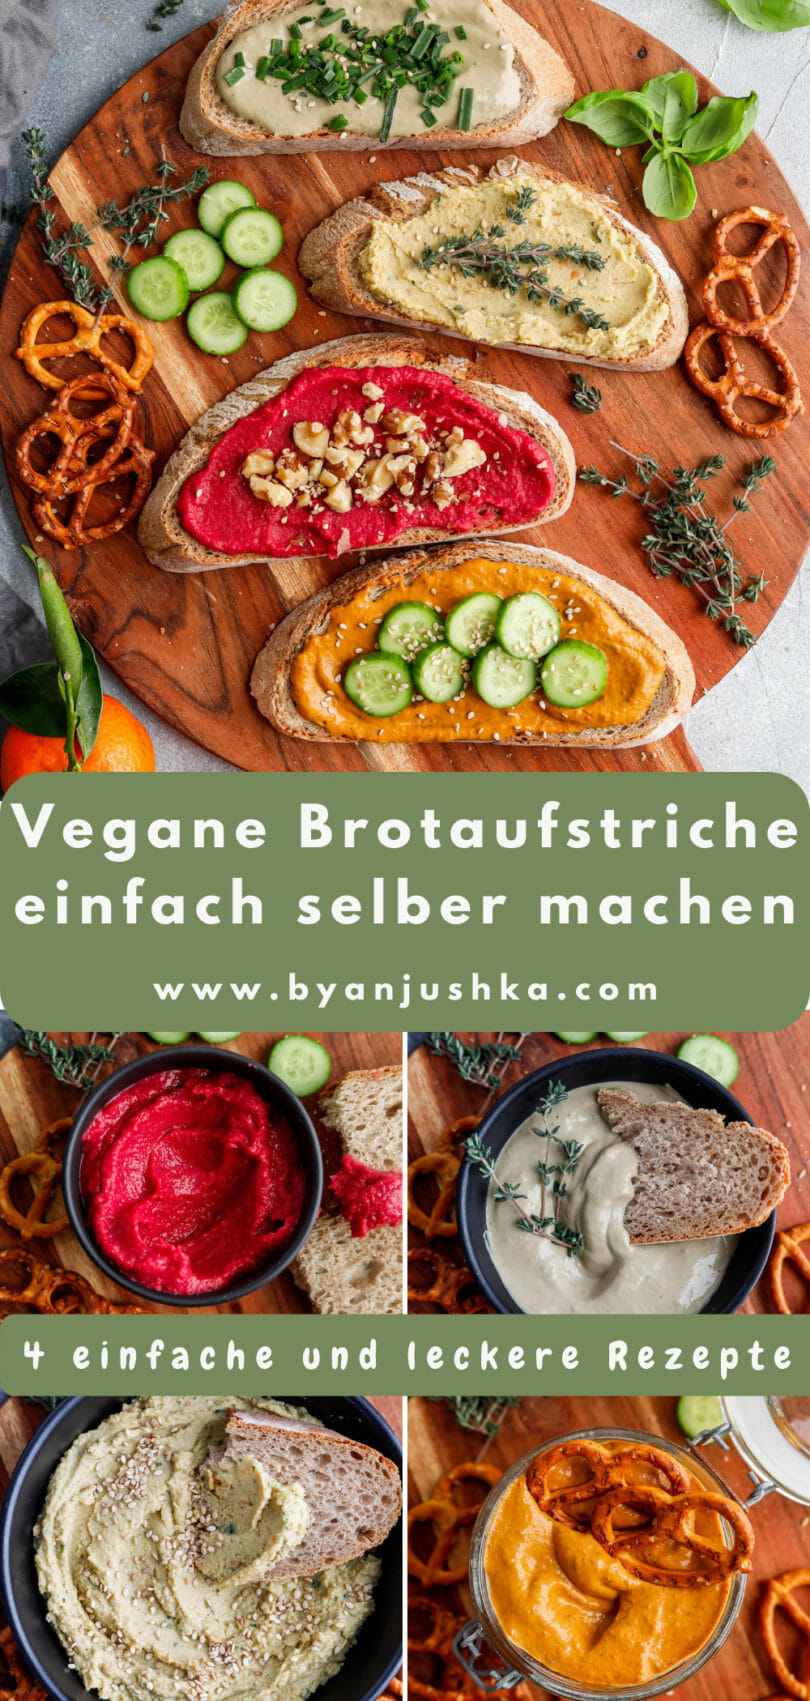 Collage für das Rezept "Vegane Brotaufstriche einfach selber machen" zum Teilen auf Pinterest